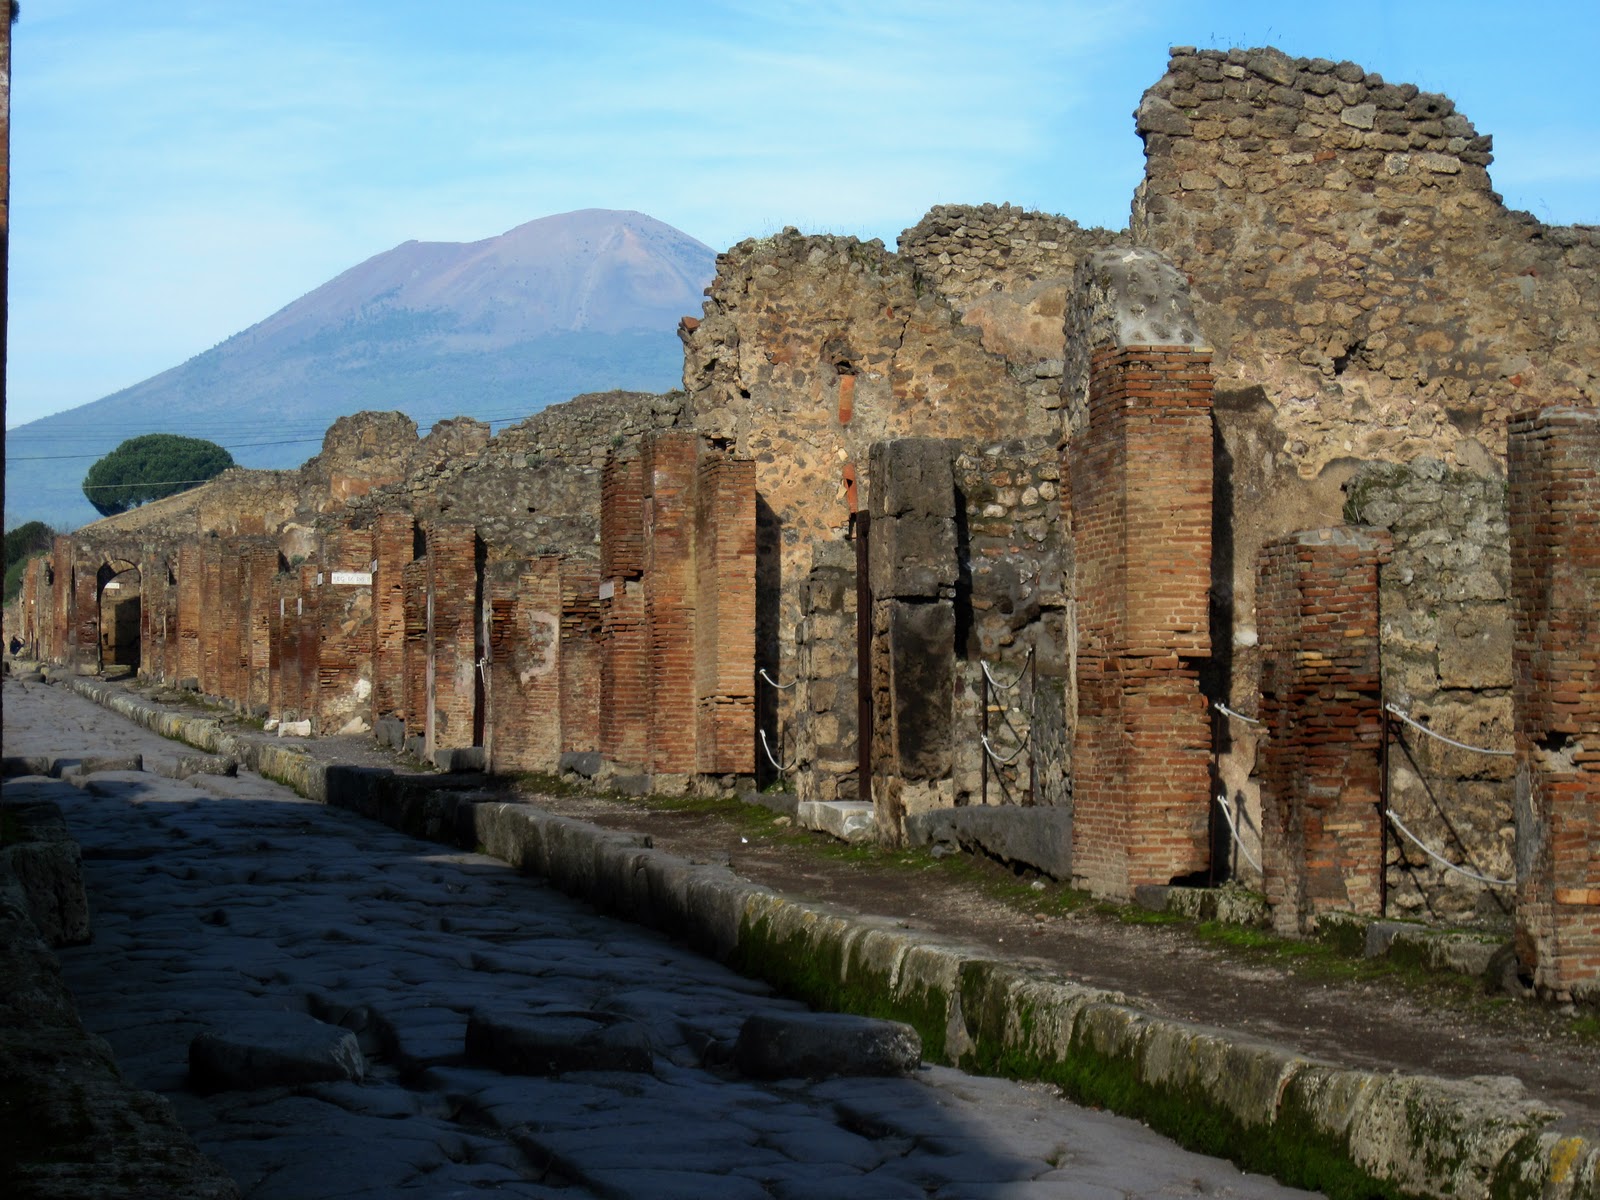 ruins-of-pompeii